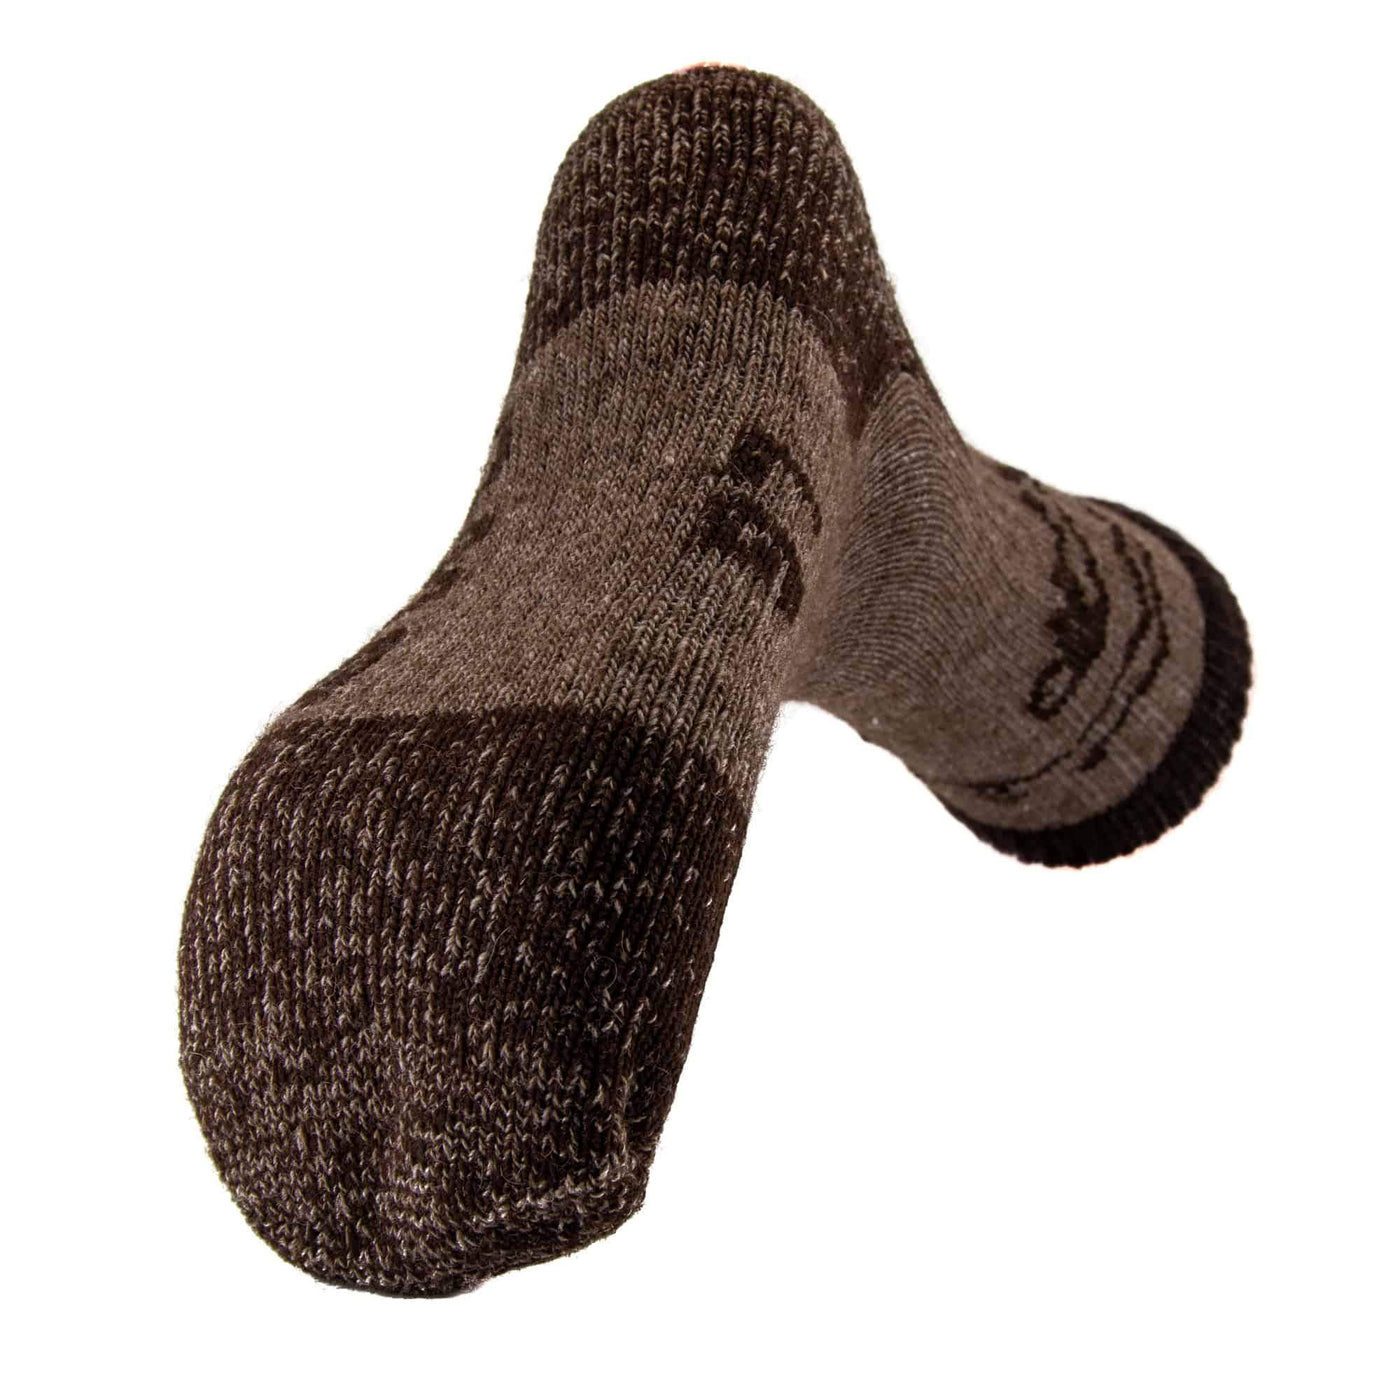 Yellowstone Bison/Merino Crew Socks Bison Footwear The Buffalo Wool Co. 